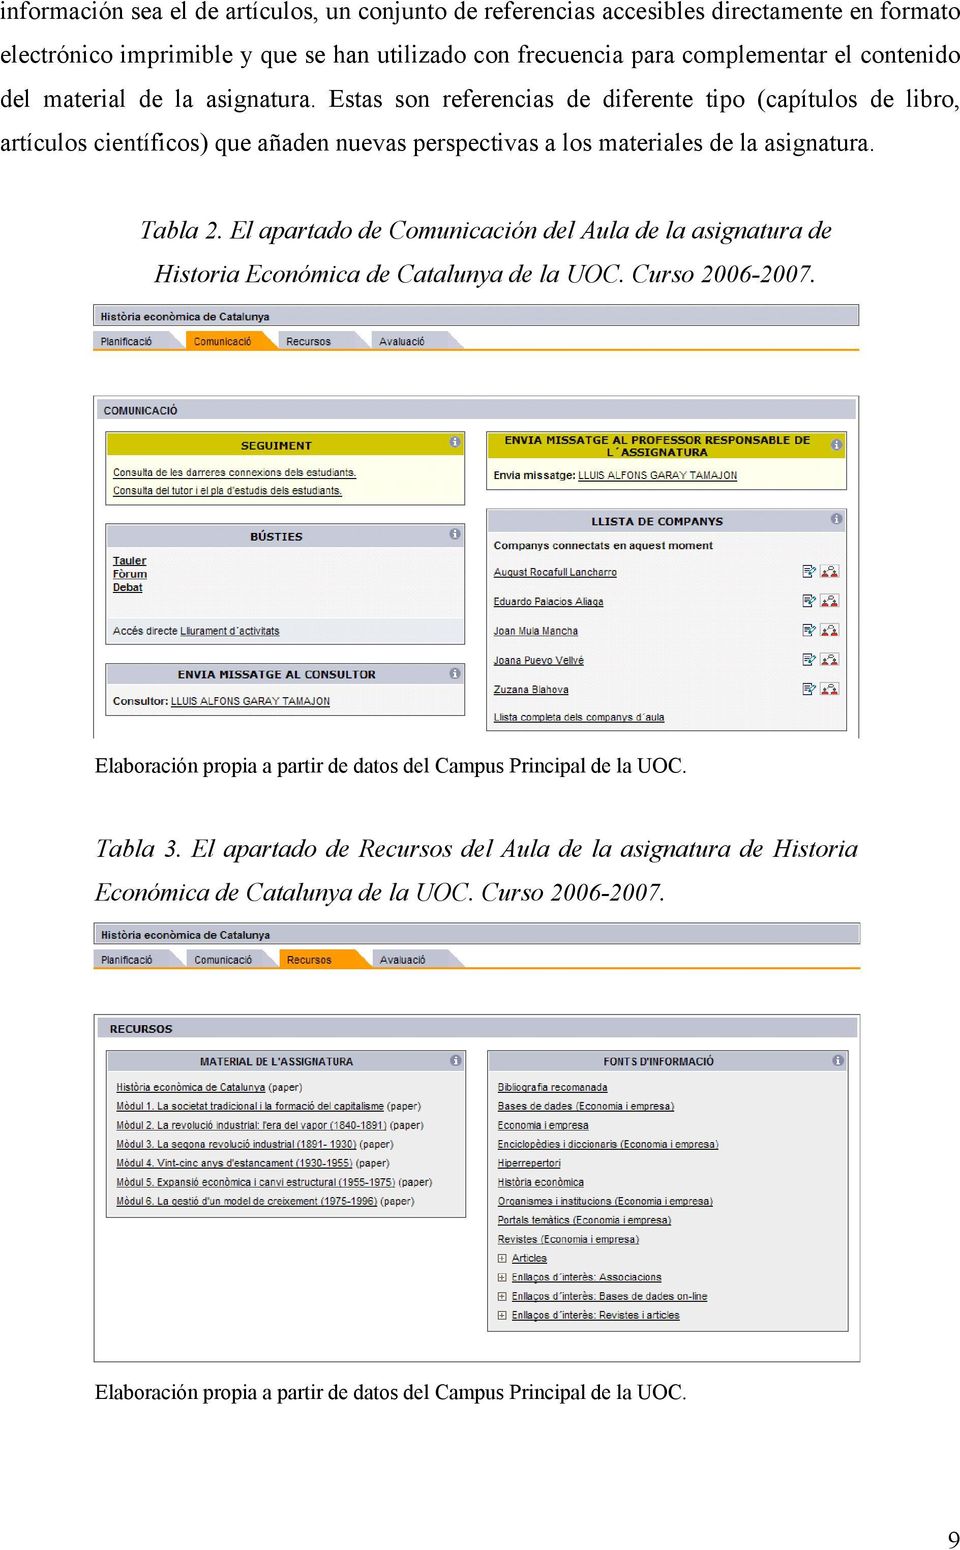 El apartado de Comunicación del Aula de la asignatura de Historia Económica de Catalunya de la UOC. Curso 2006-2007. Elaboración propia a partir de datos del Campus Principal de la UOC.